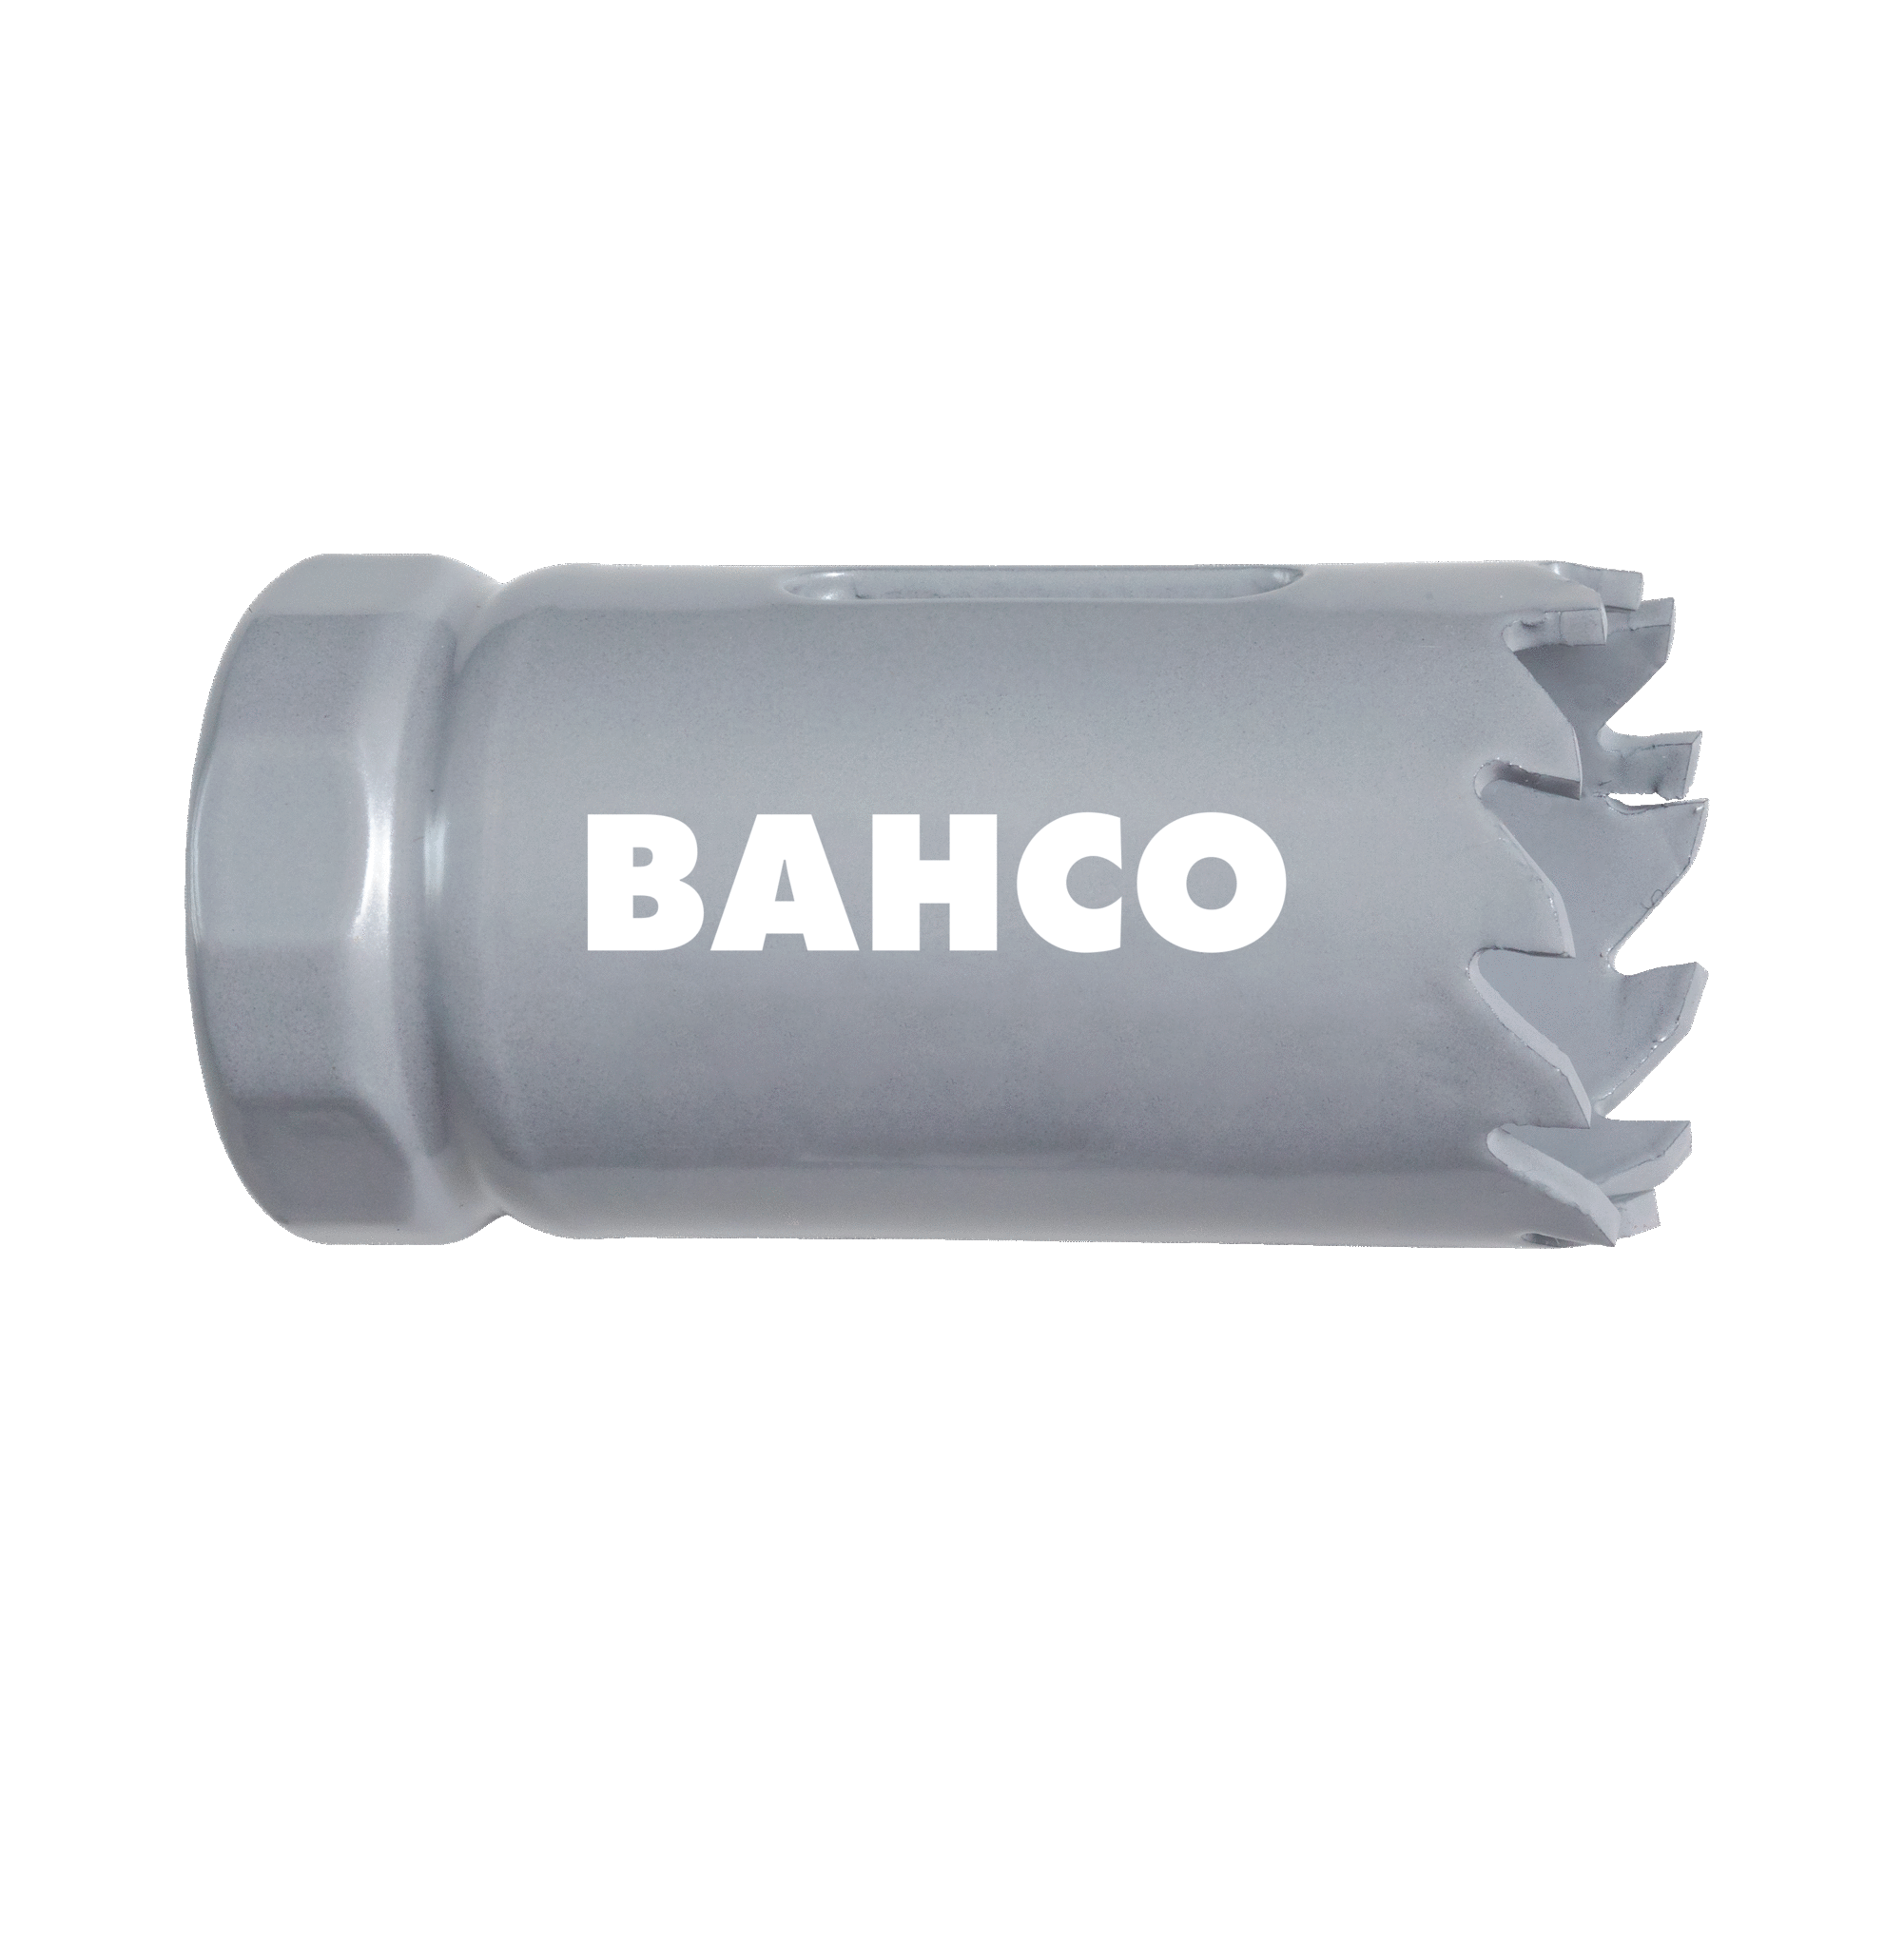 Кольцевые пилы с твердосплавными напайками BAHCO 3832-68